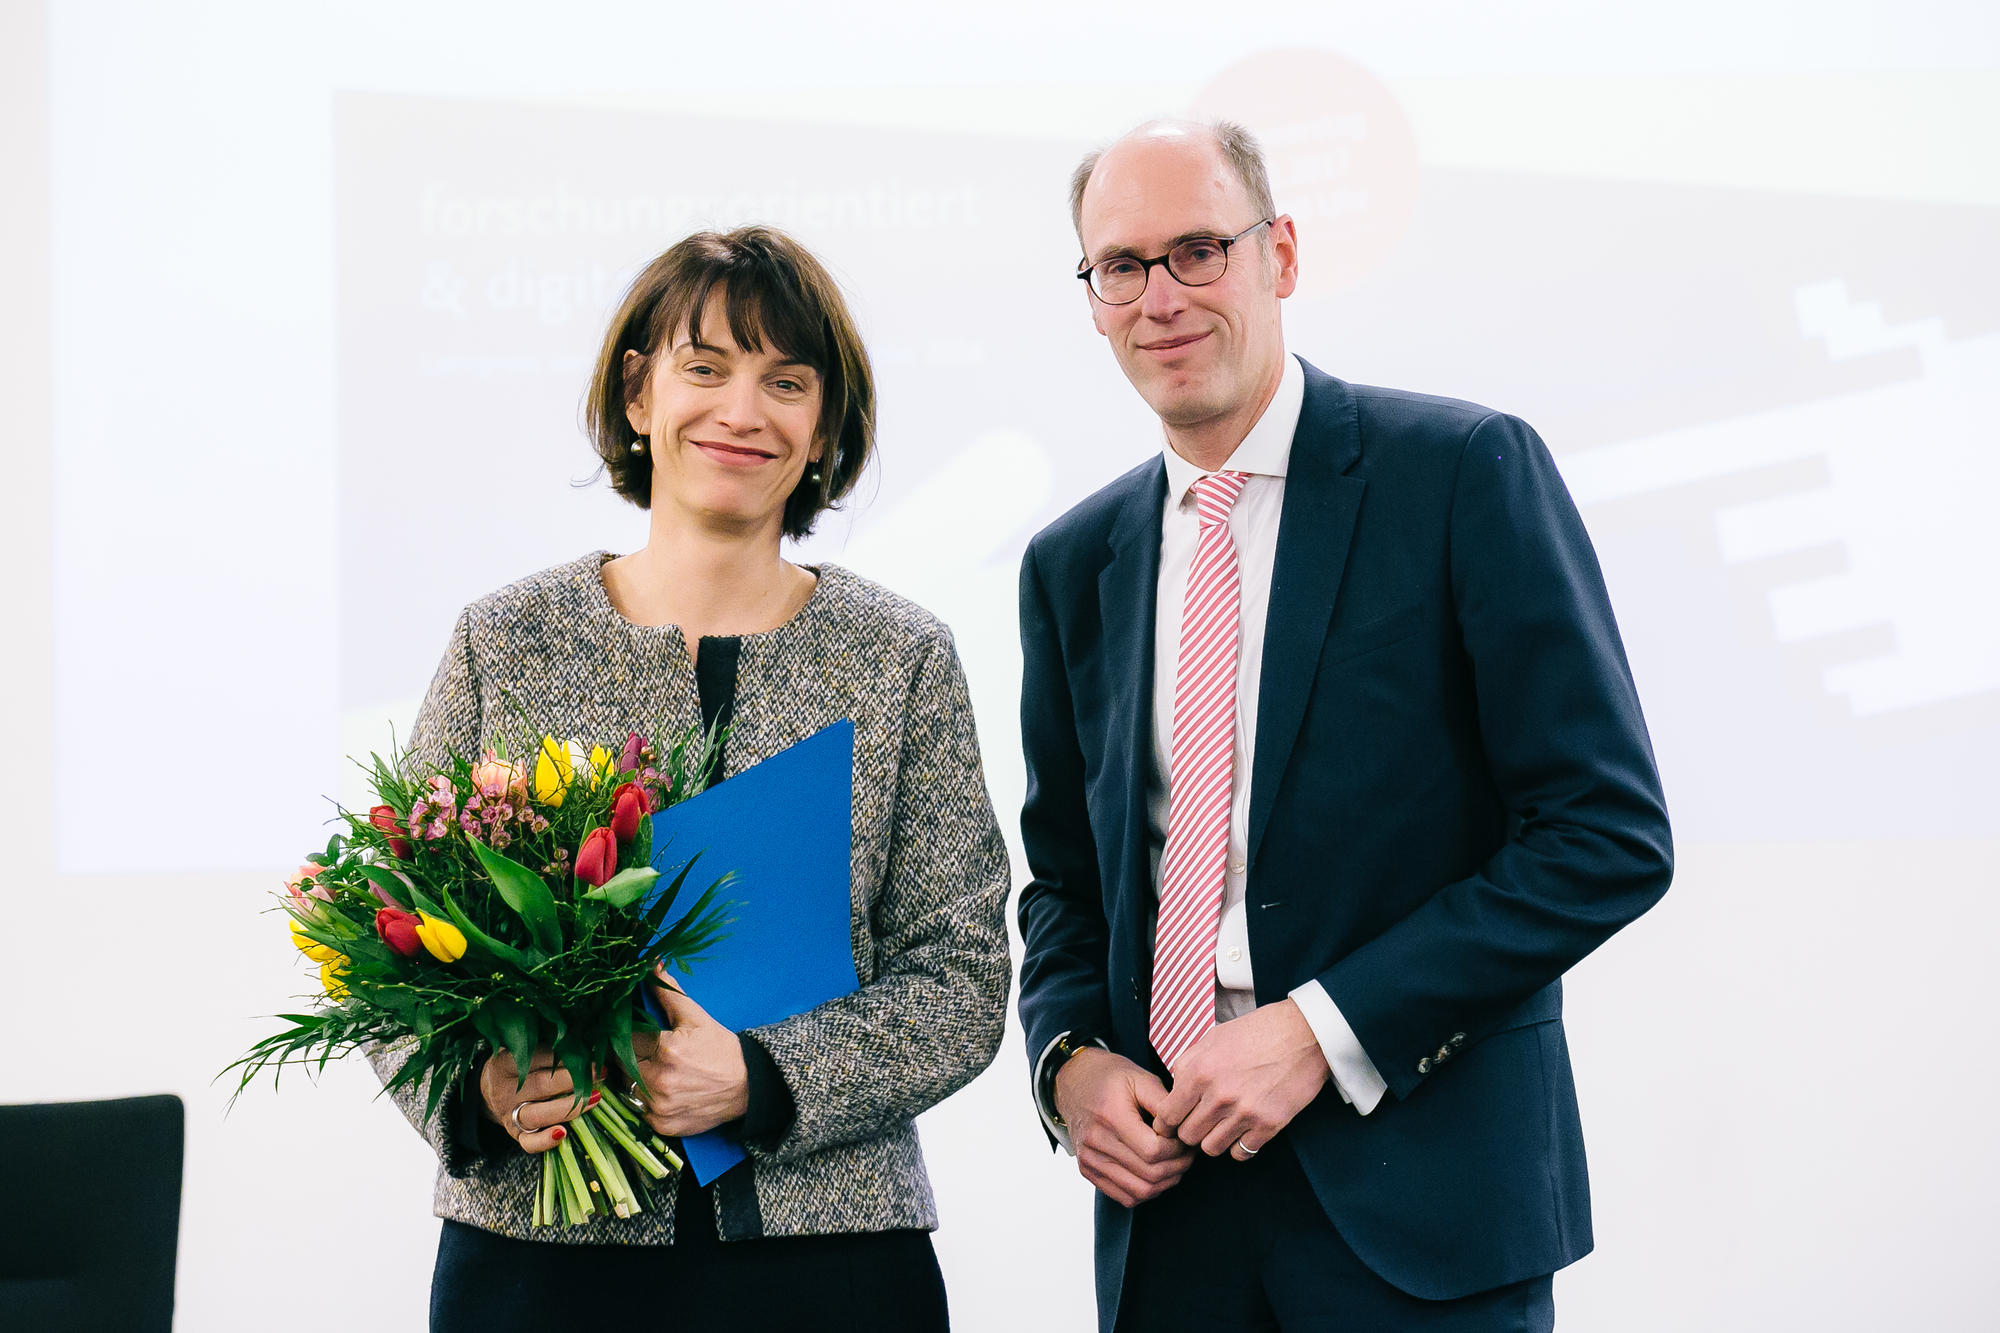 Jutta Müller-Tamm, Professorin für Literaturwissenschaft, wurde von Universitätspräsident Peter-André Alt für die hervorragende Betreuung von Promovierenden ausgezeichnet.